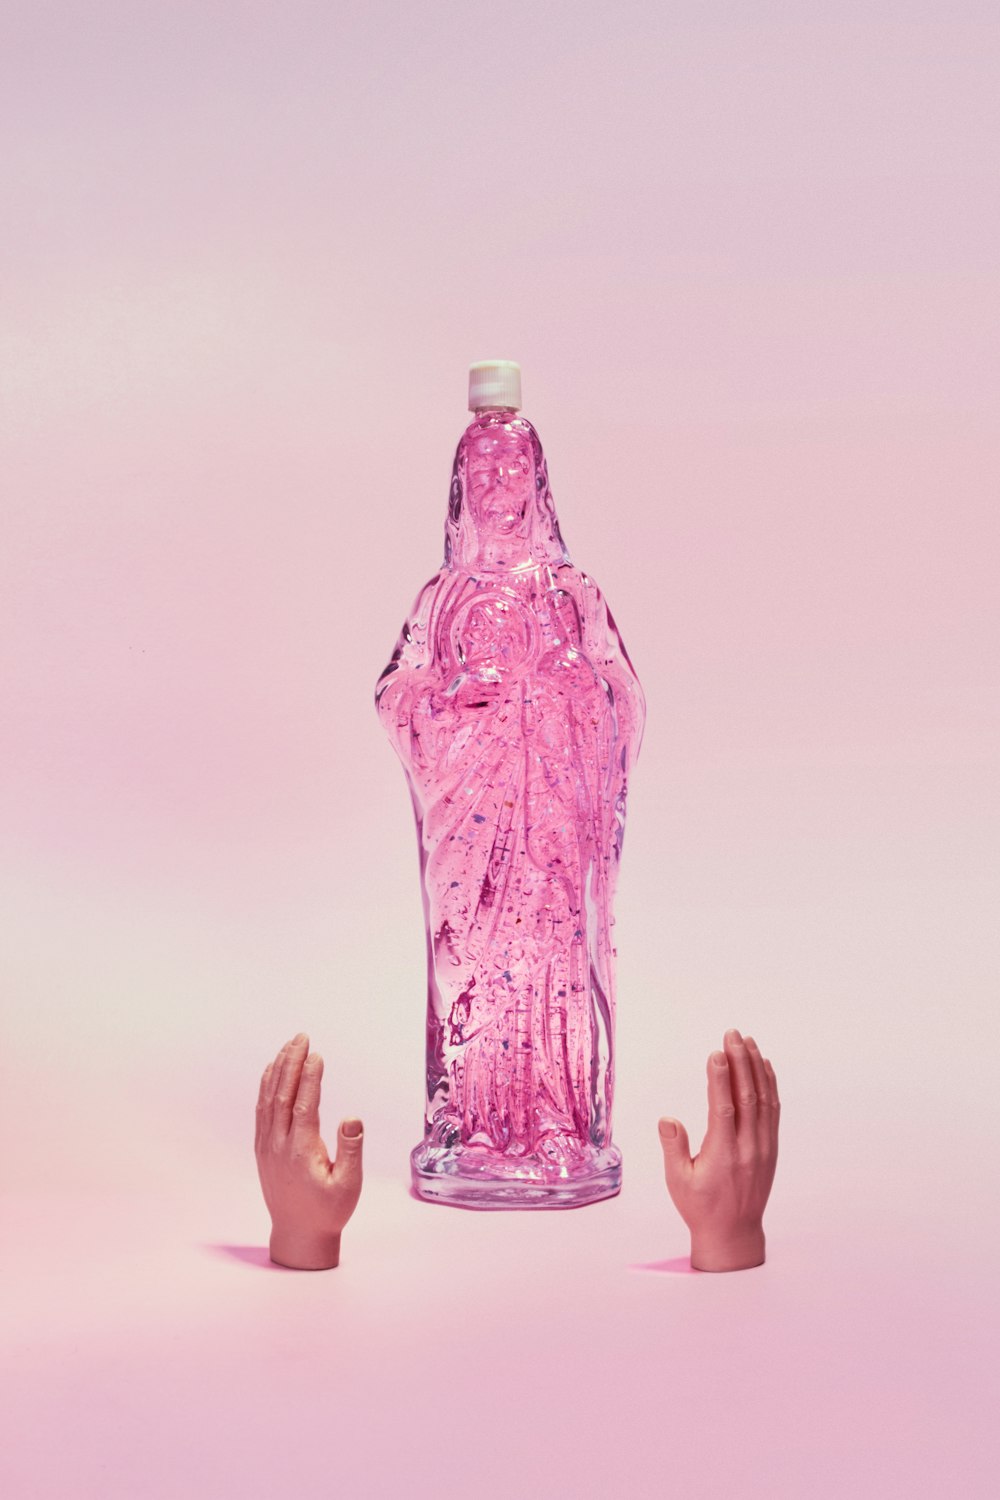 Persona che tiene in mano una bottiglia di plastica viola